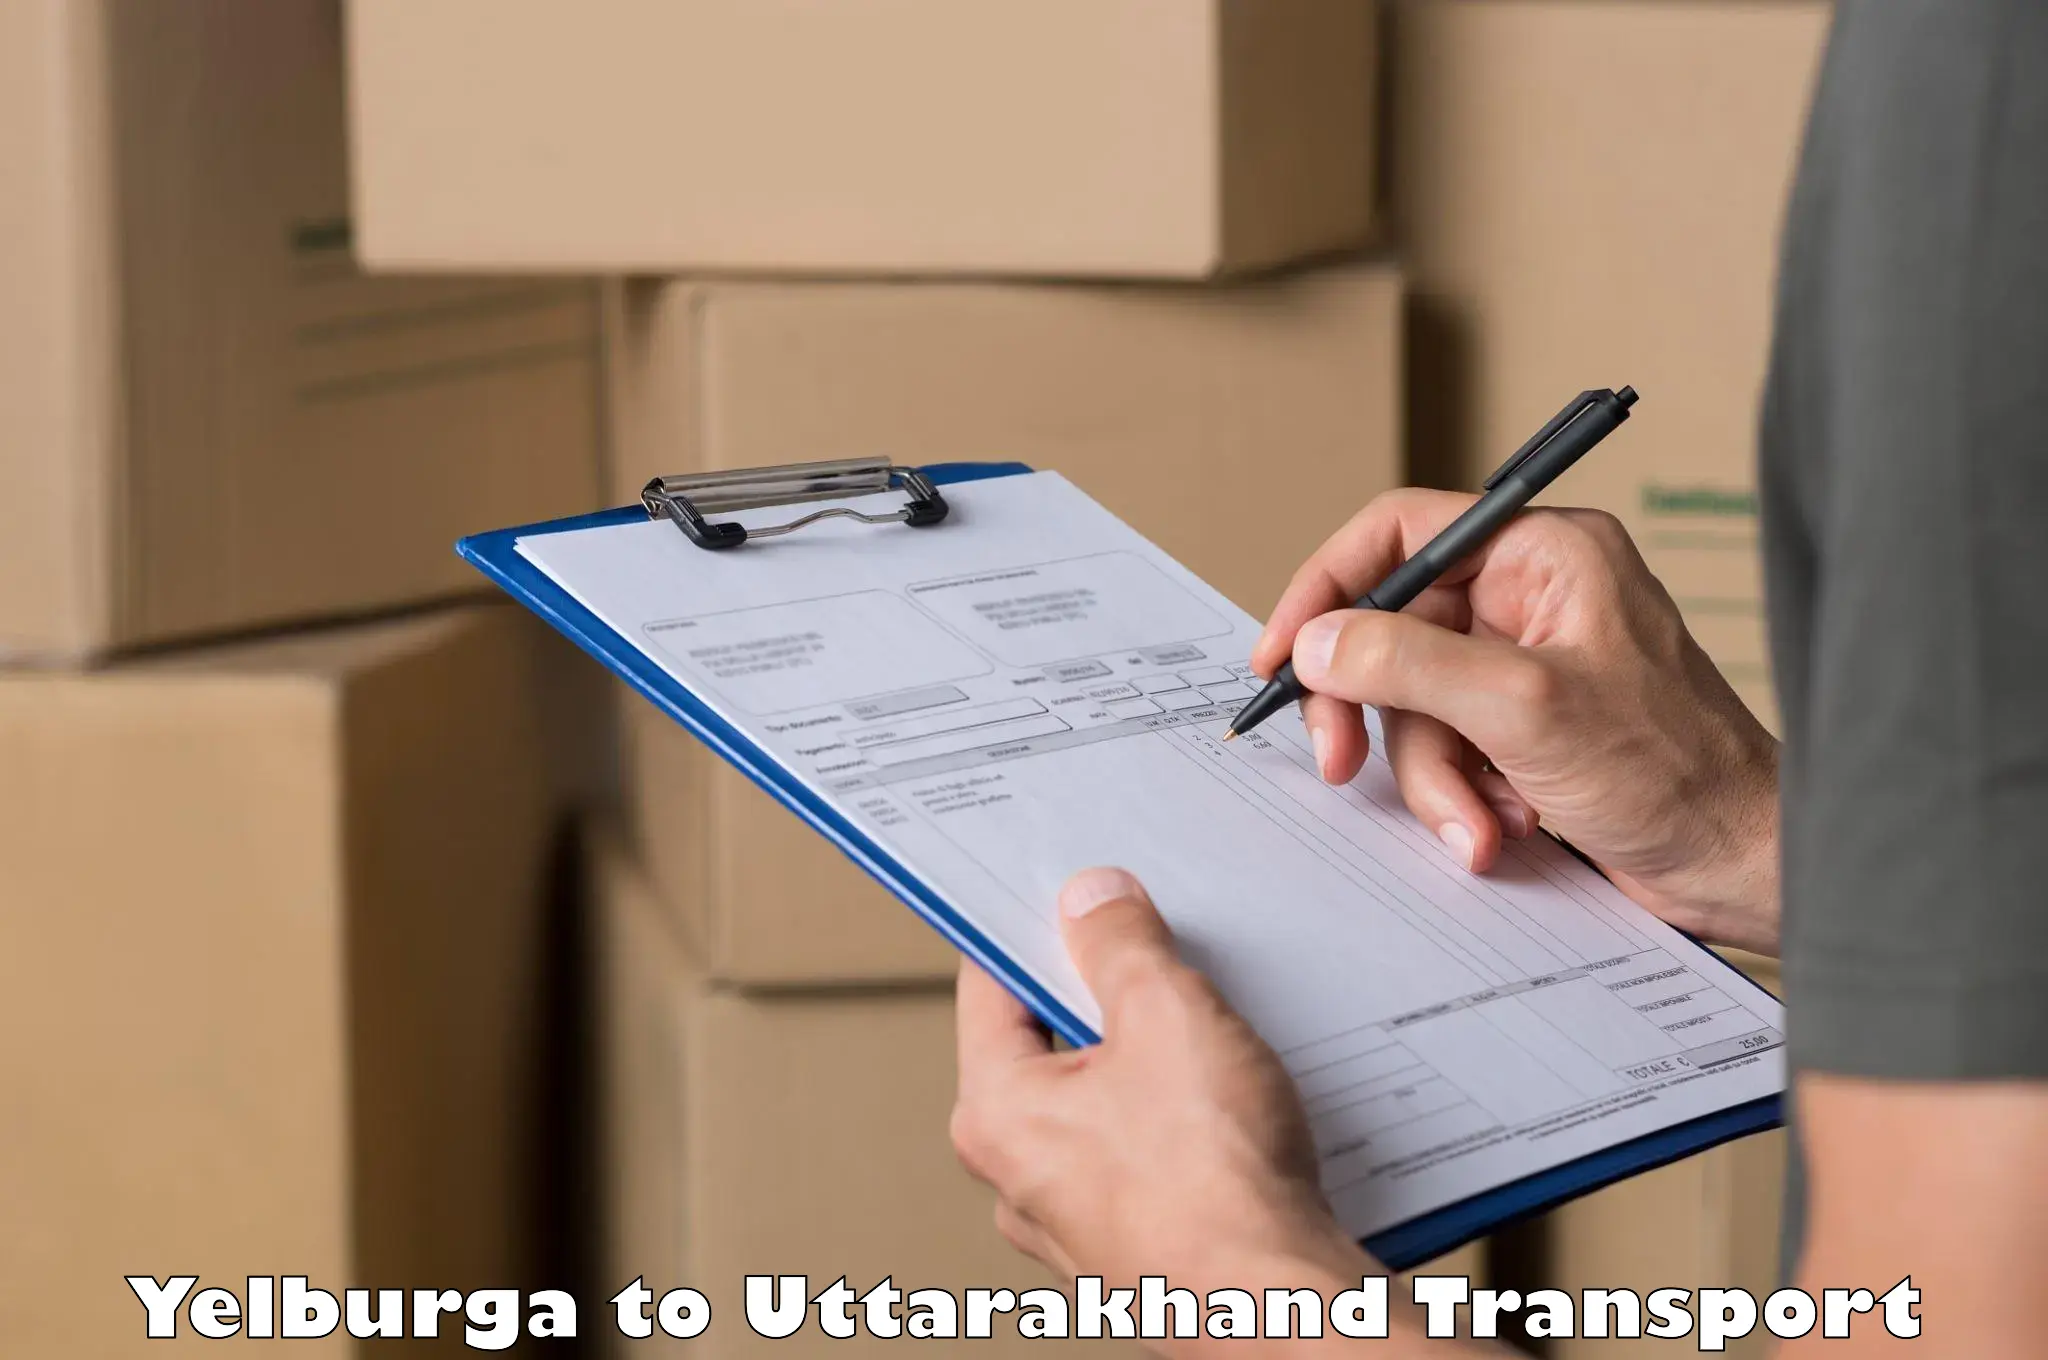 Truck transport companies in India Yelburga to Uttarakhand